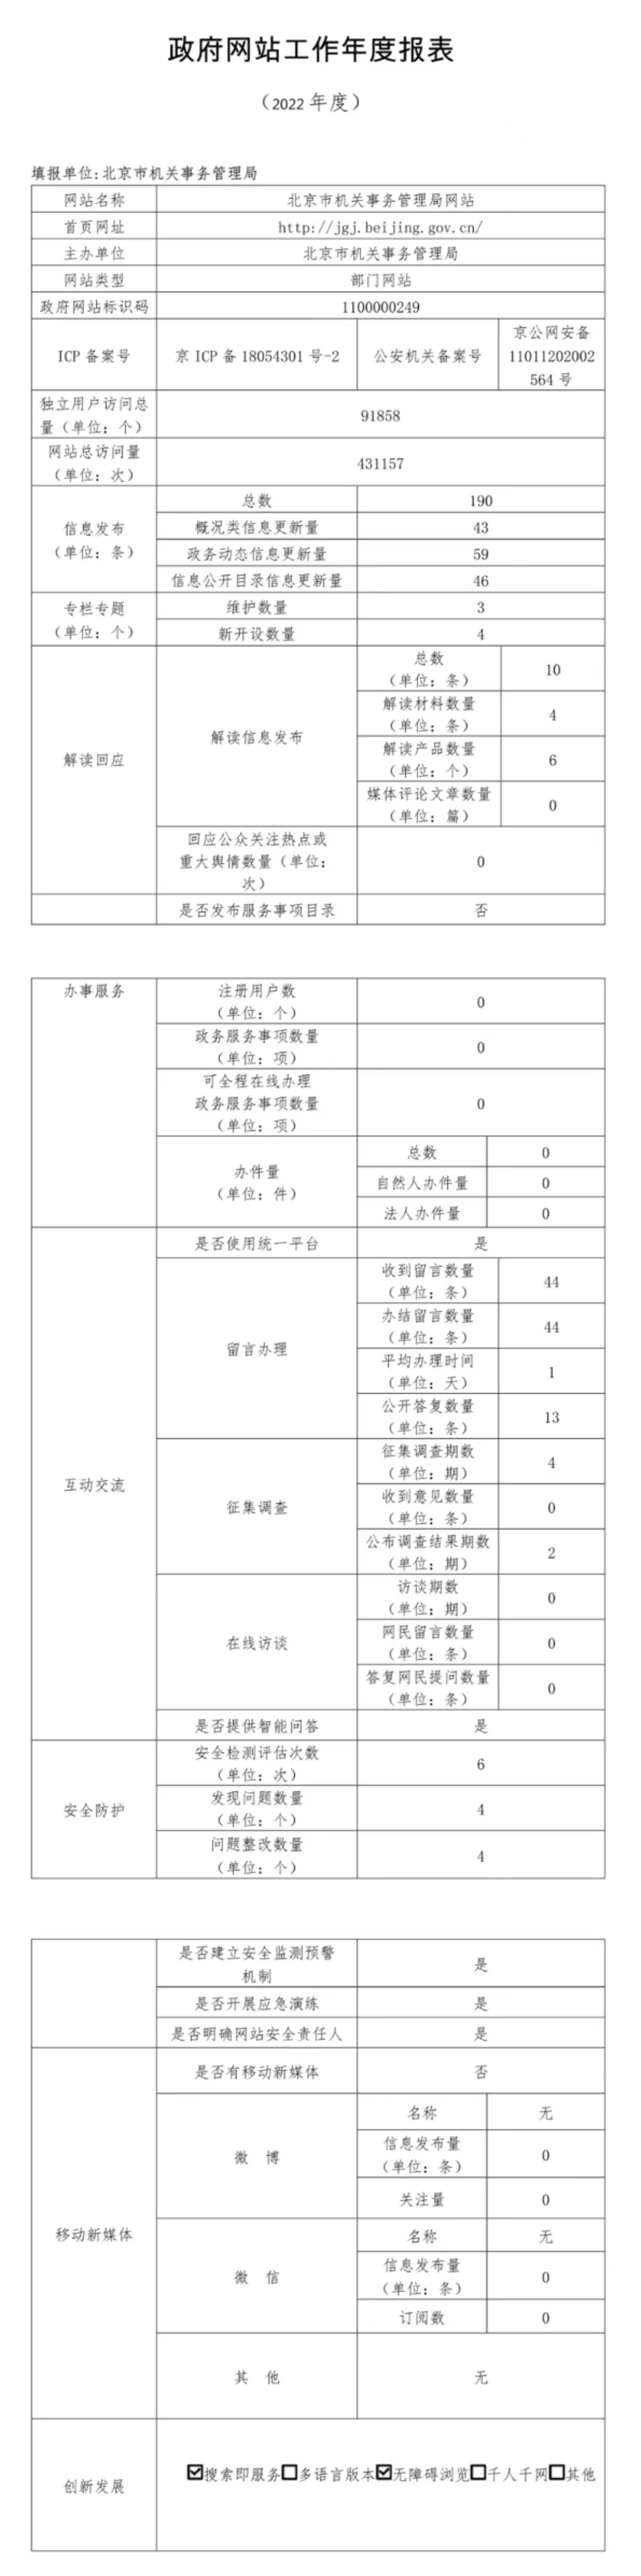 北京市机关事务管理局2022年政府网站年度工作报表